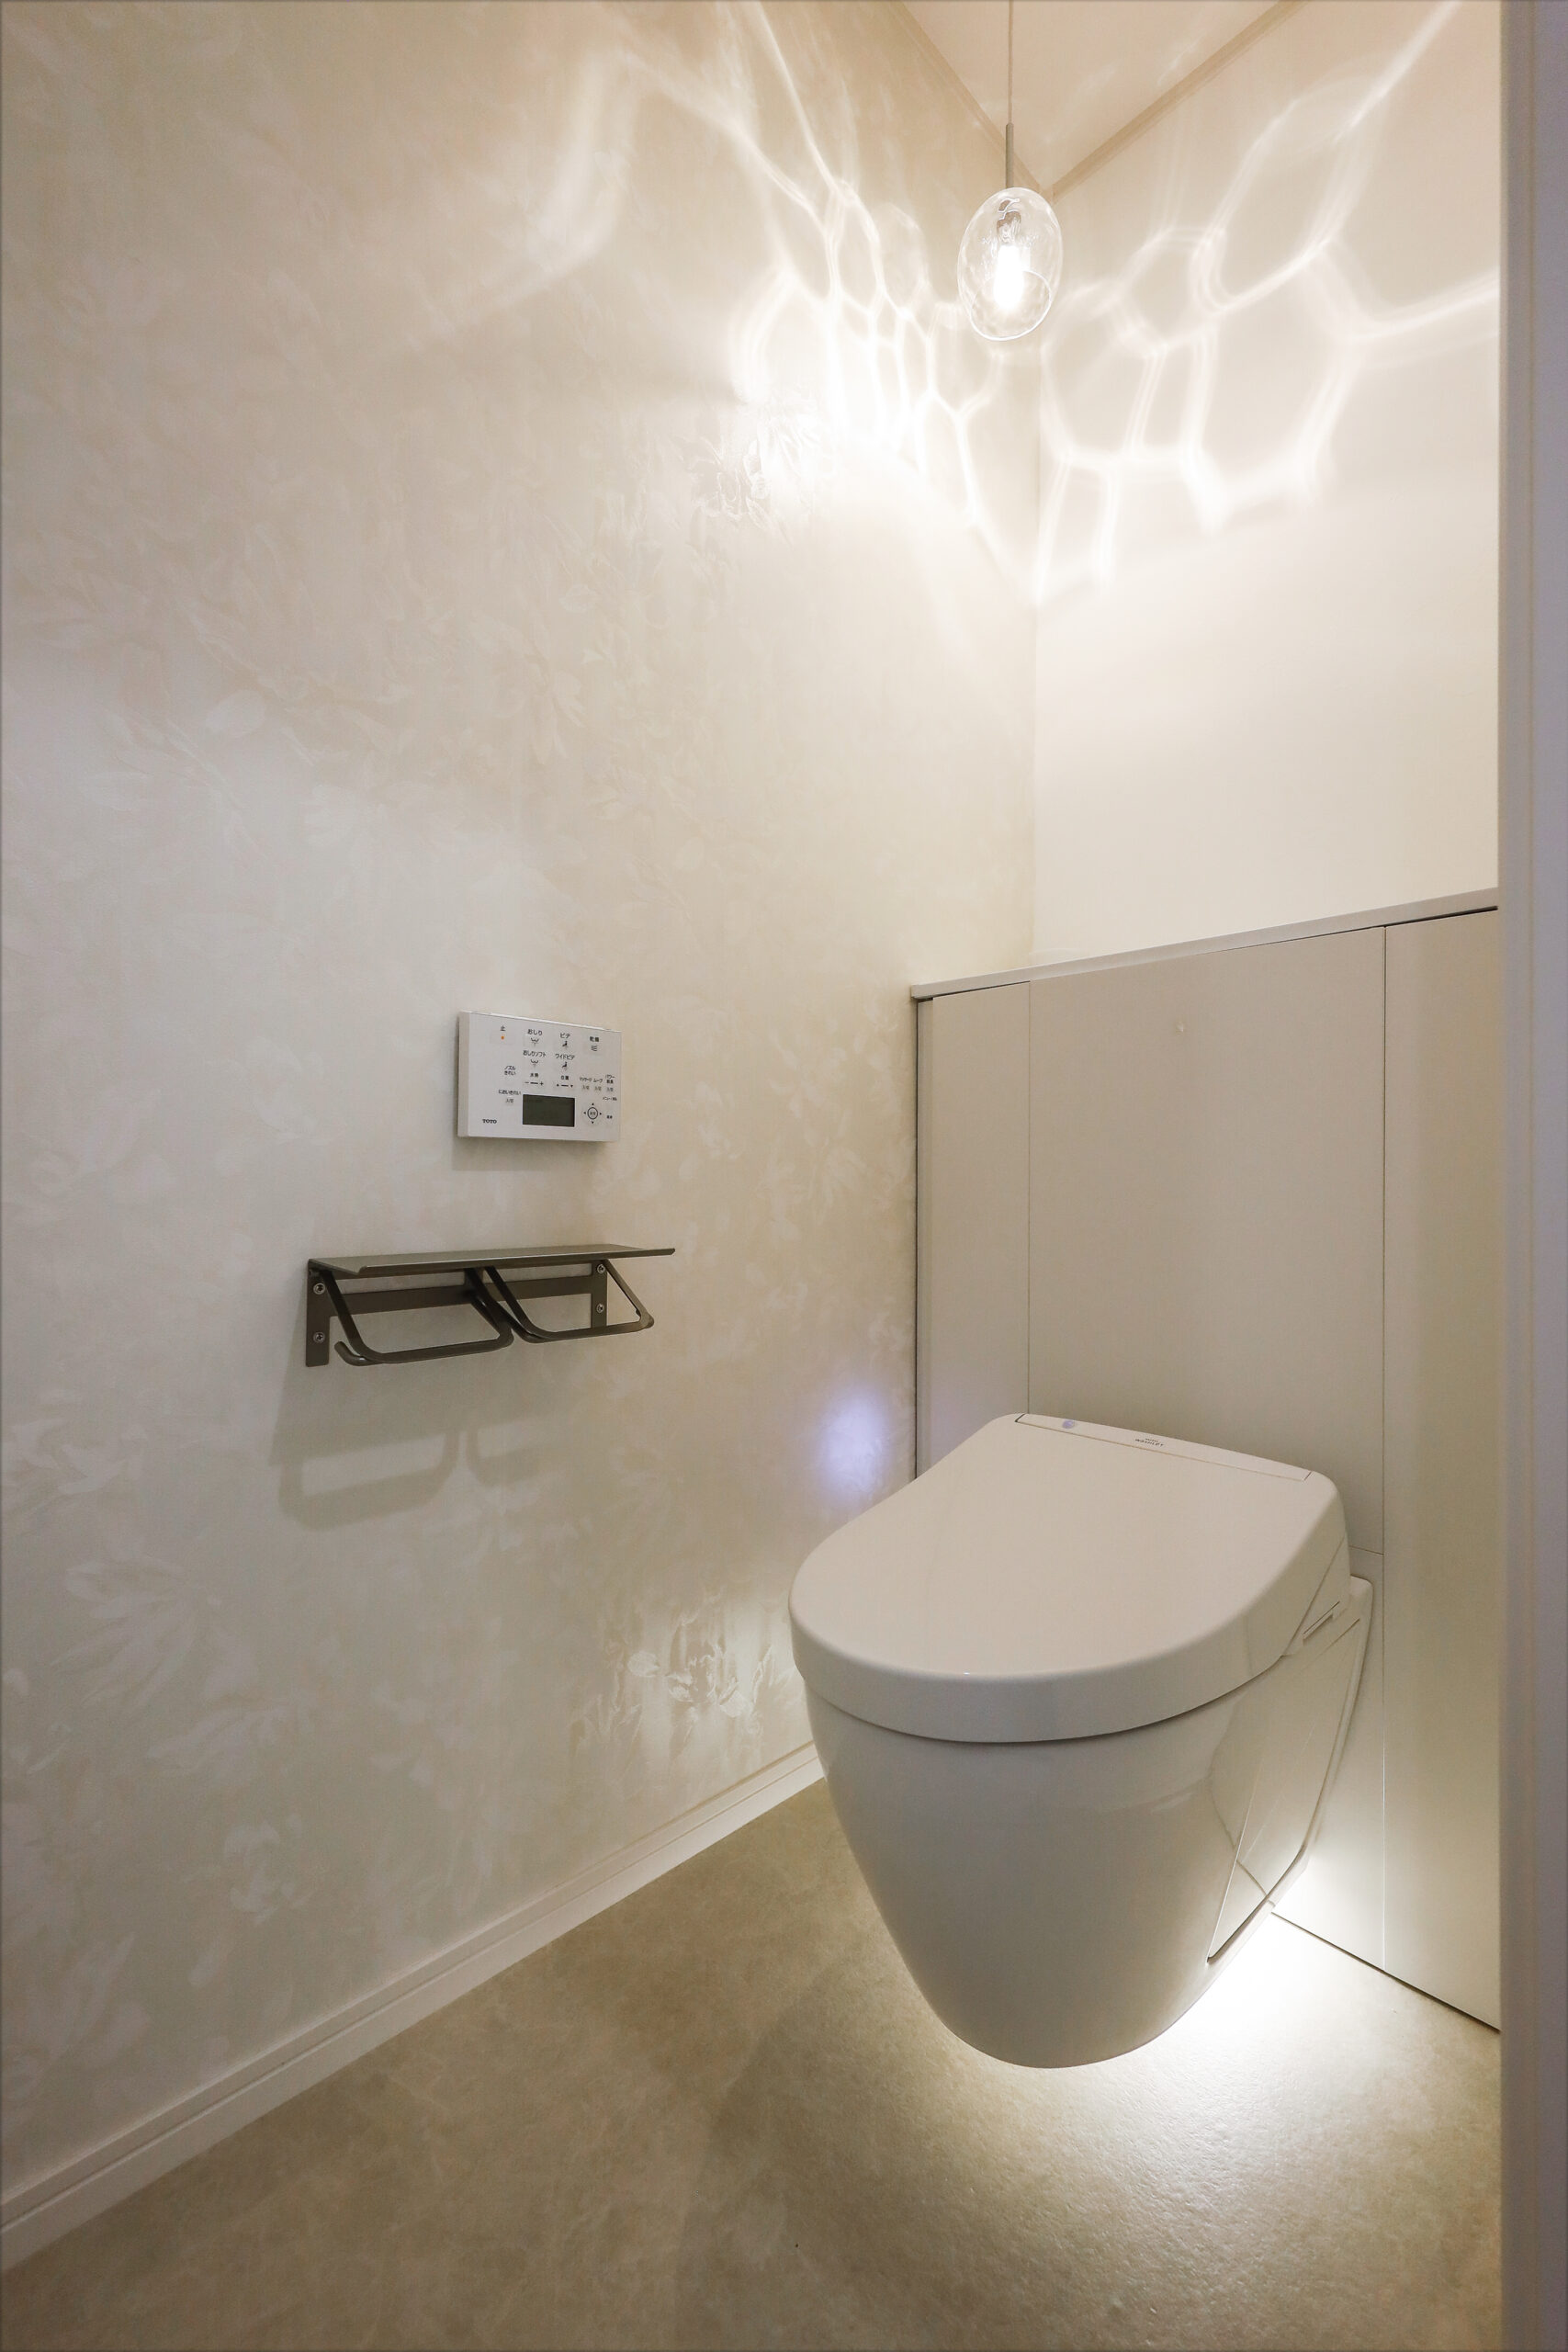 掃除が簡単なフロートトイレを採用。間接照明の光が幻想的。 